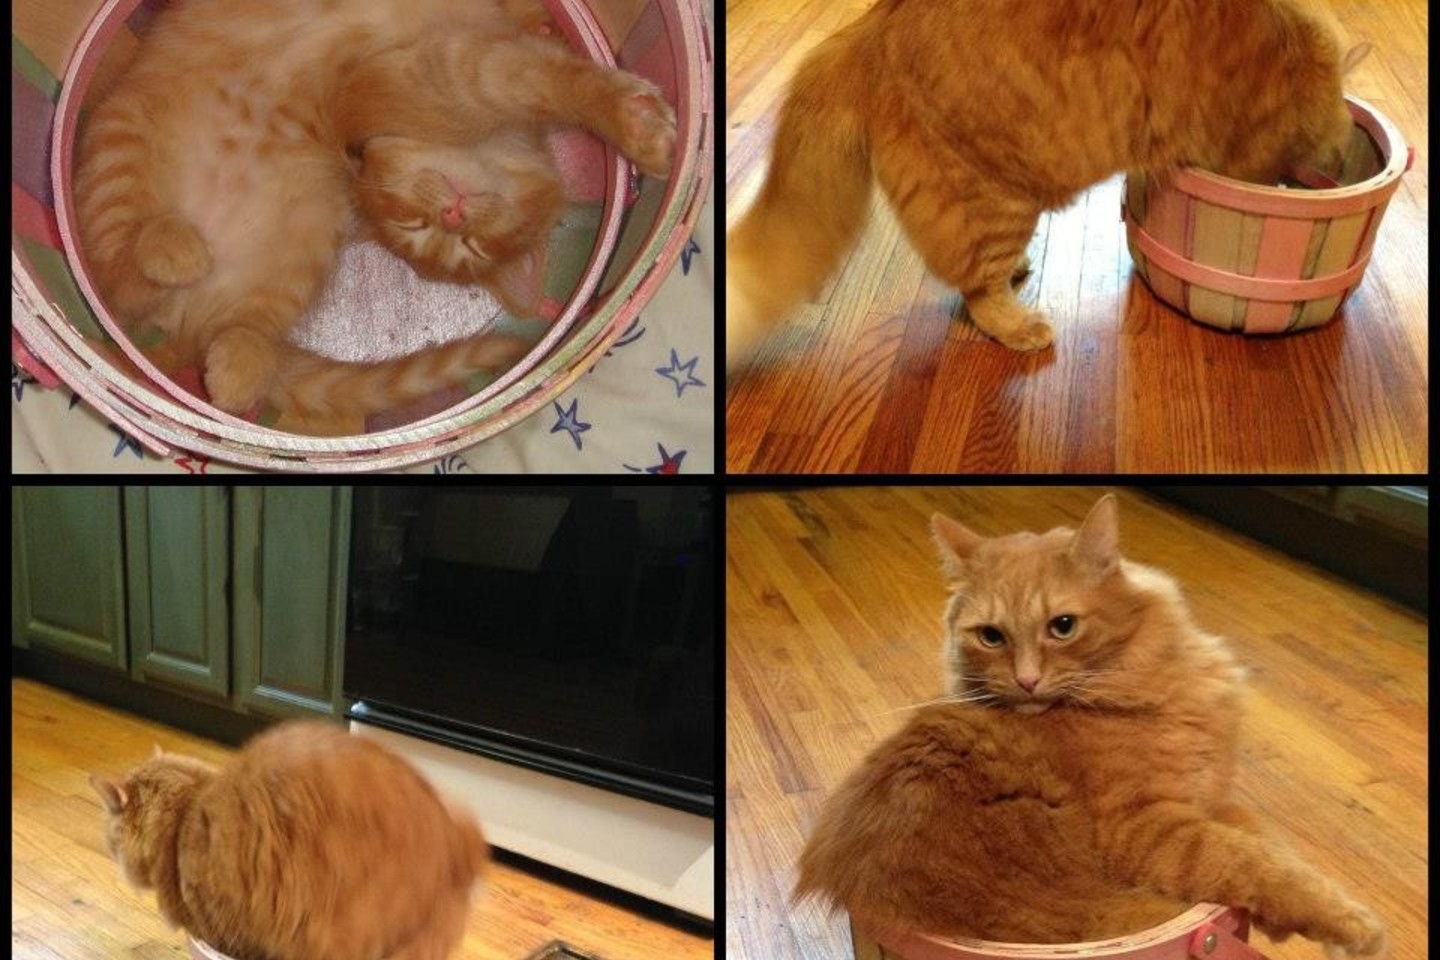  Šis oranžinis gražuolis į namus buvo parneštas krepšelyje, kol dar buvo kačiukas. Neseniai jis vėl atrado savąjį krepšelį.<br> Soc. tinklų nuotr. 